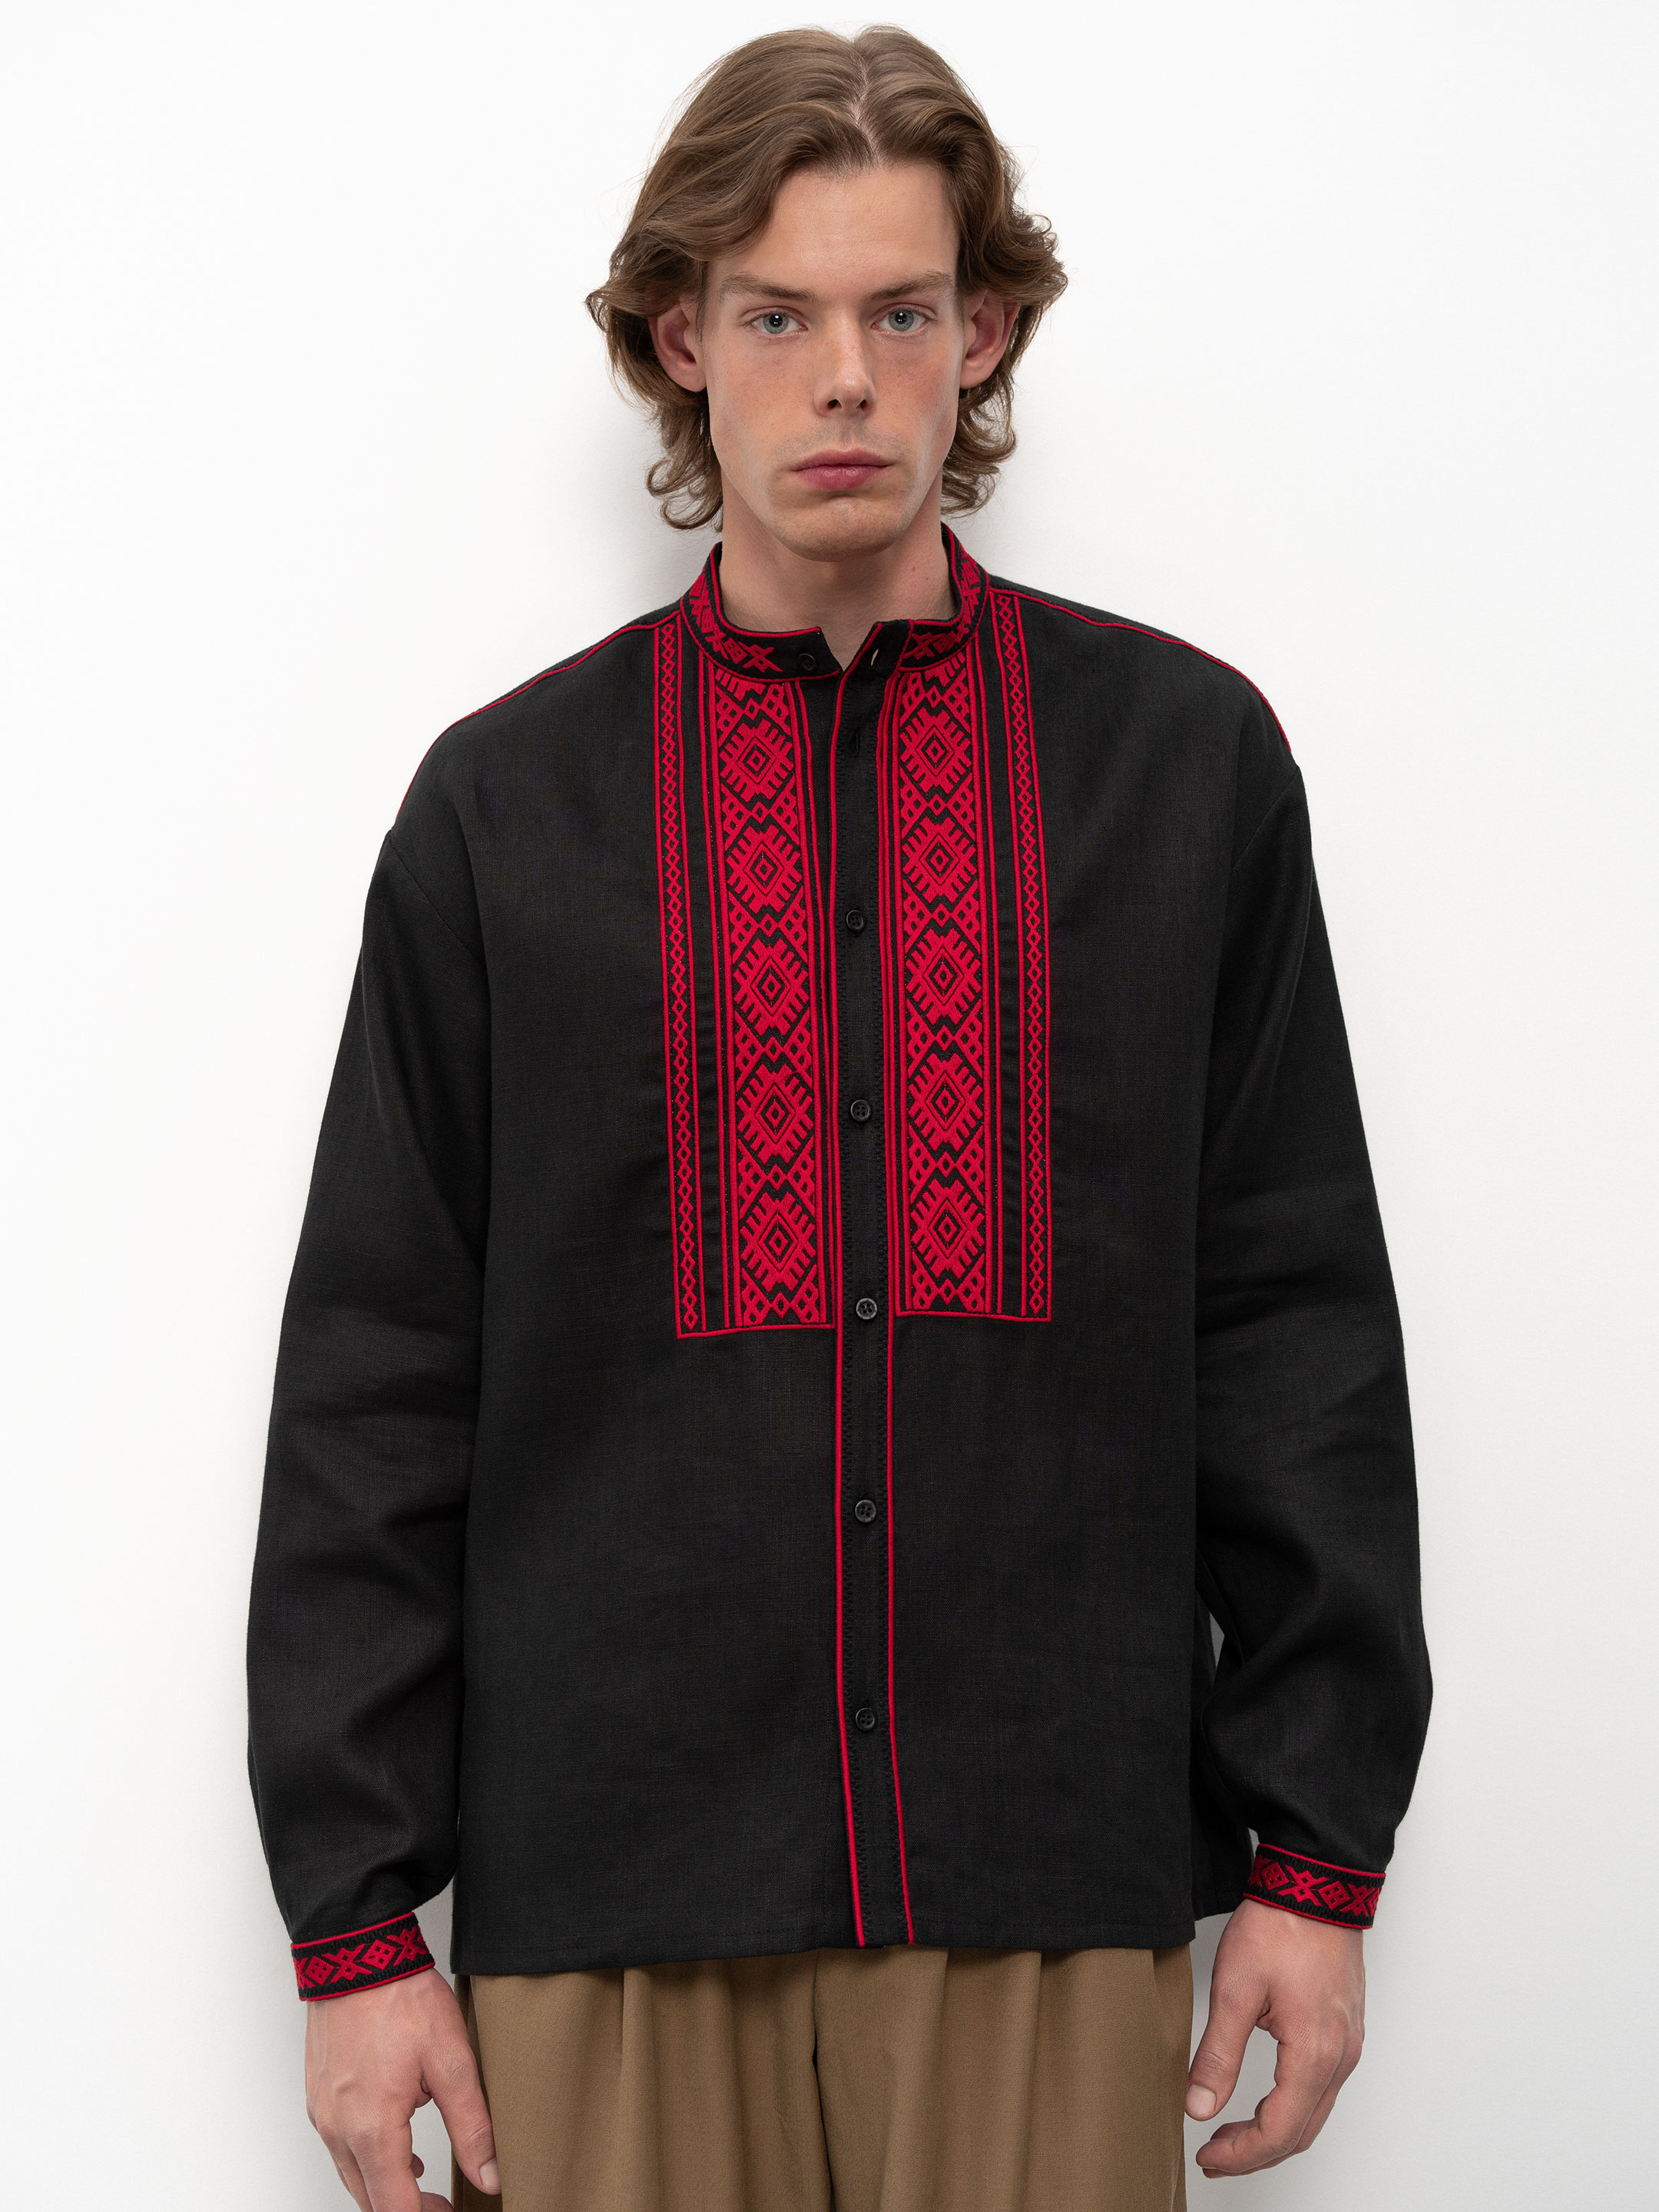 Black men's embroidered shirt Zhytomyr Chorna - photo 1